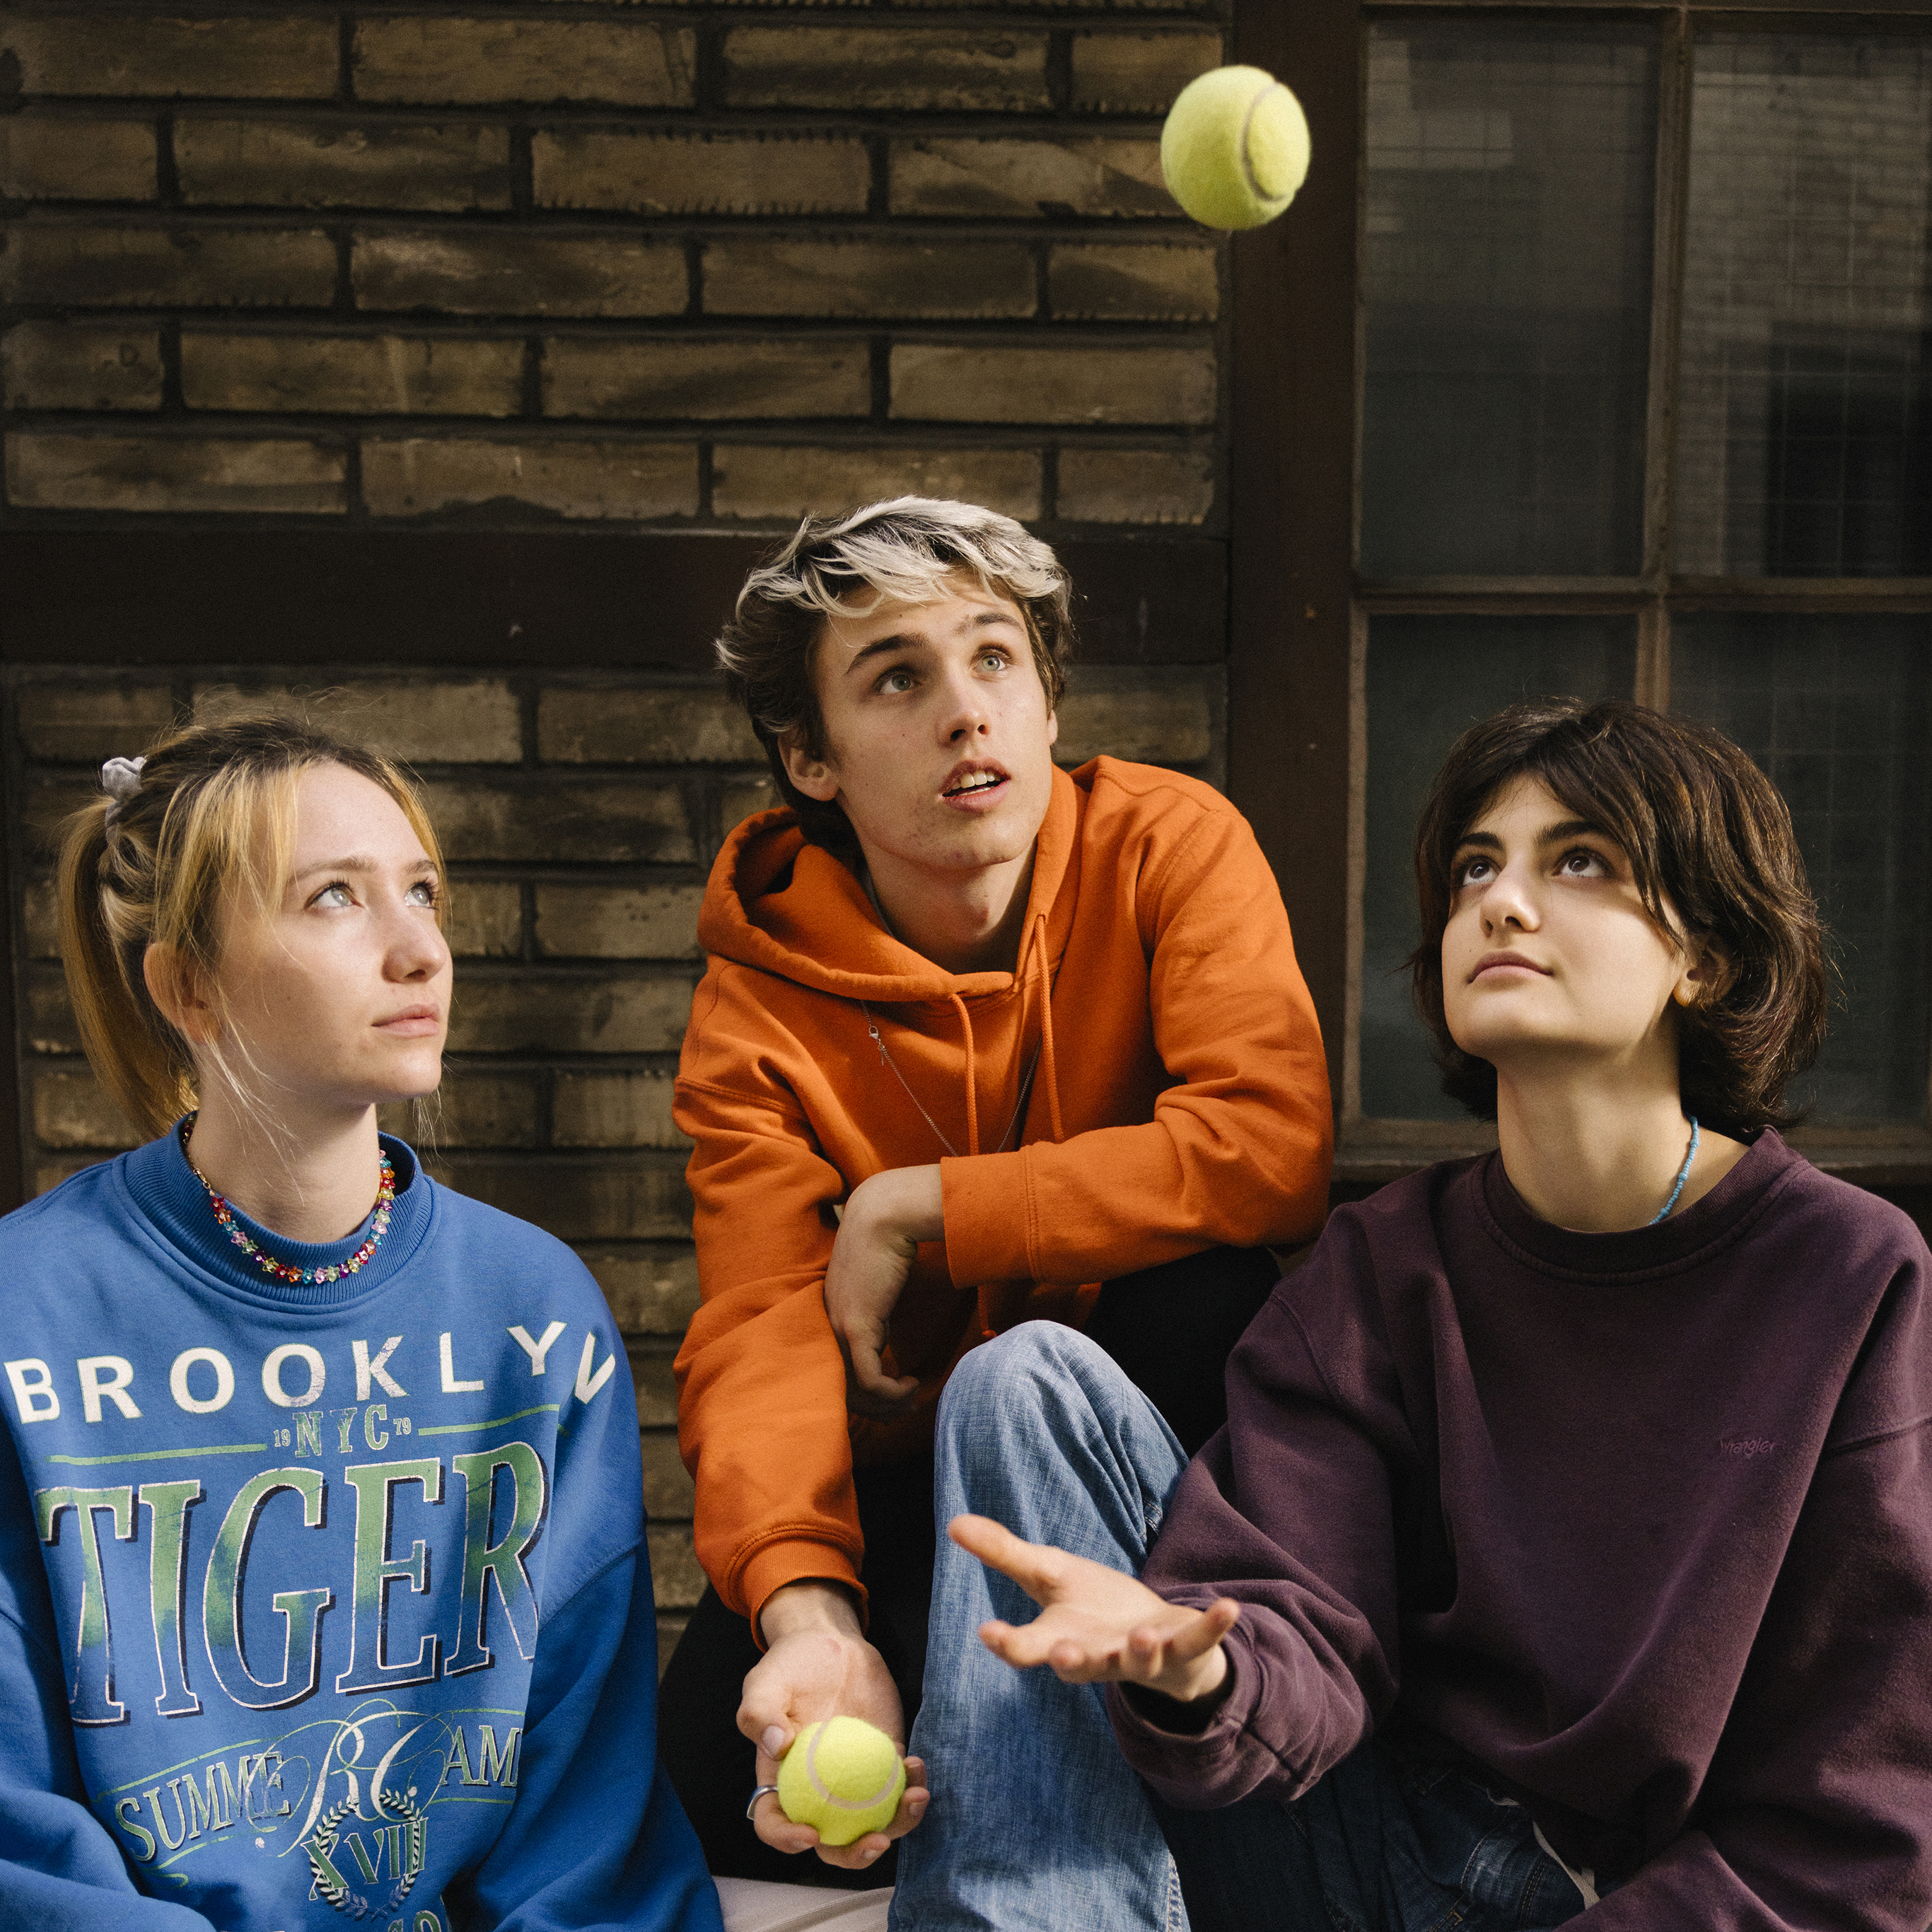 Drei Jugendliche starren fokussiert auf einen in die Luft geworfenen Tennisball.